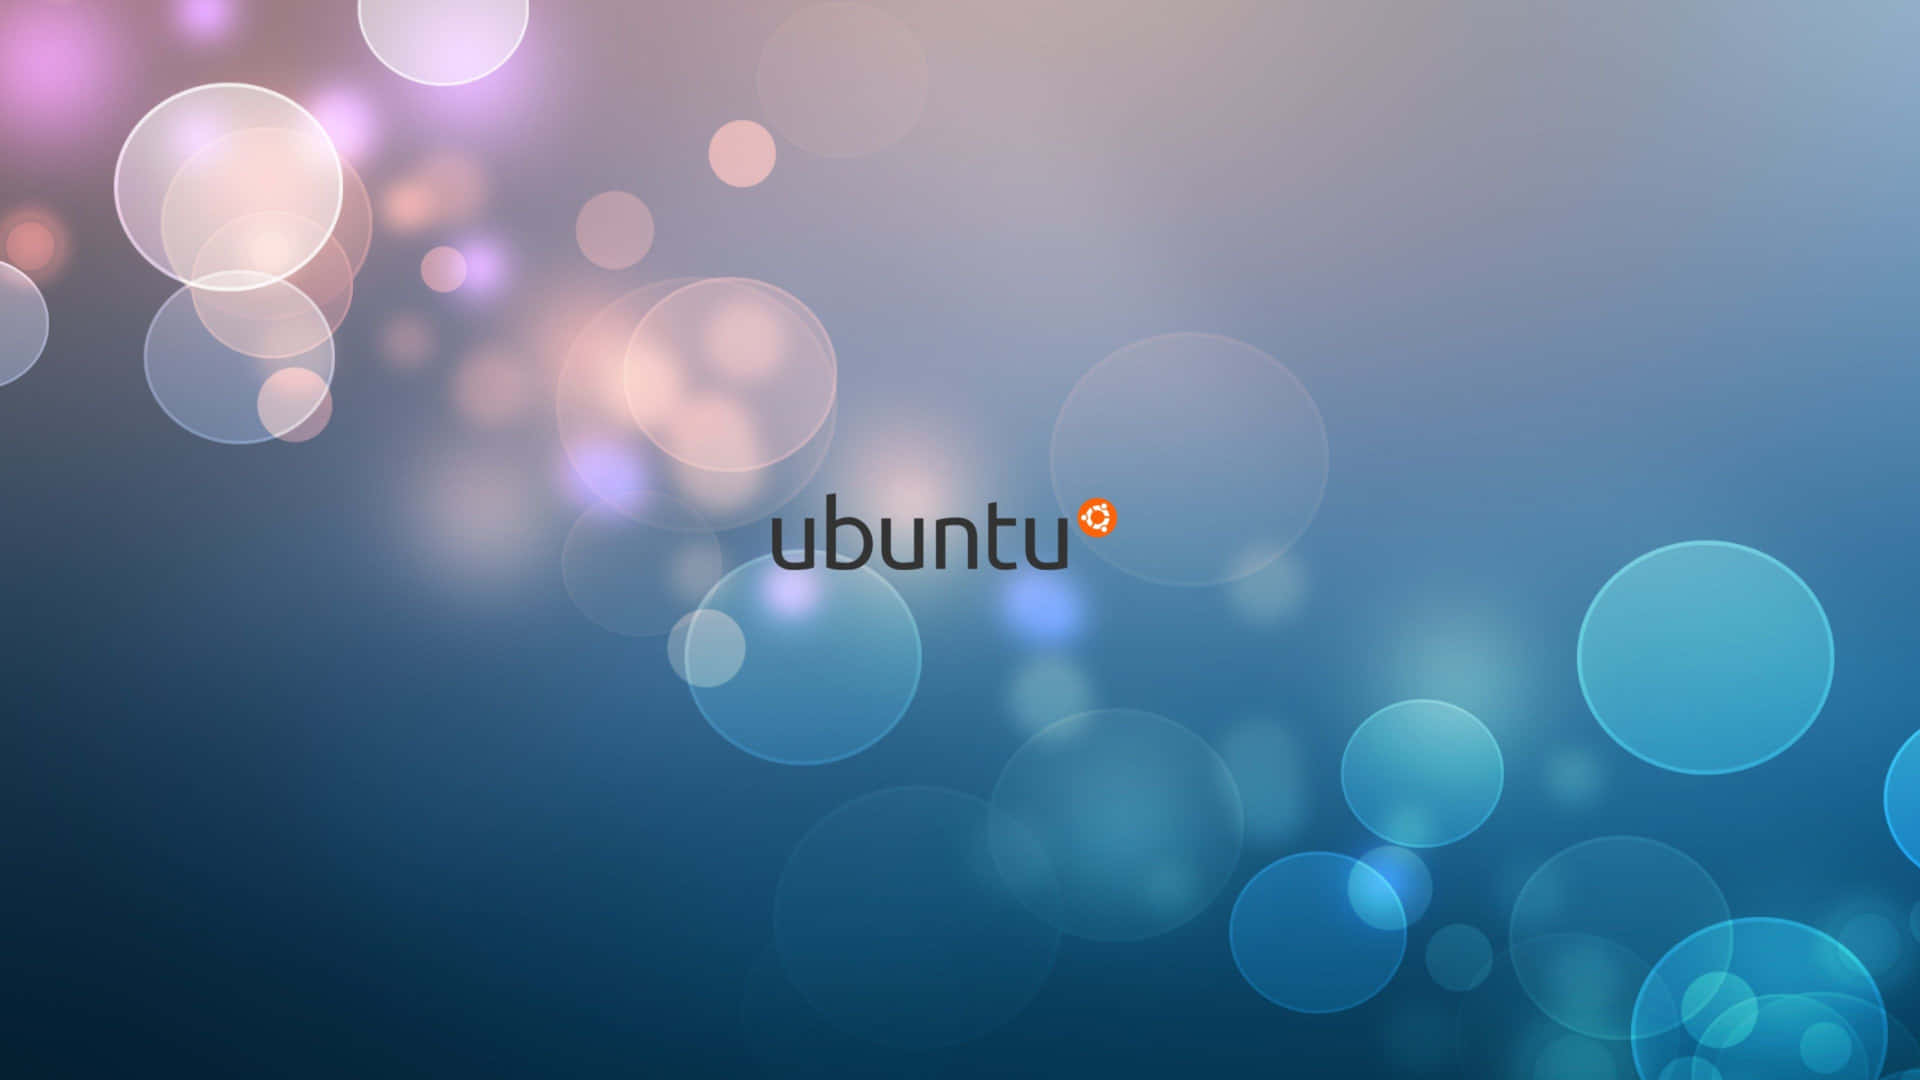 Umfundo Azul Com A Palavra Ubuntu. Papel de Parede